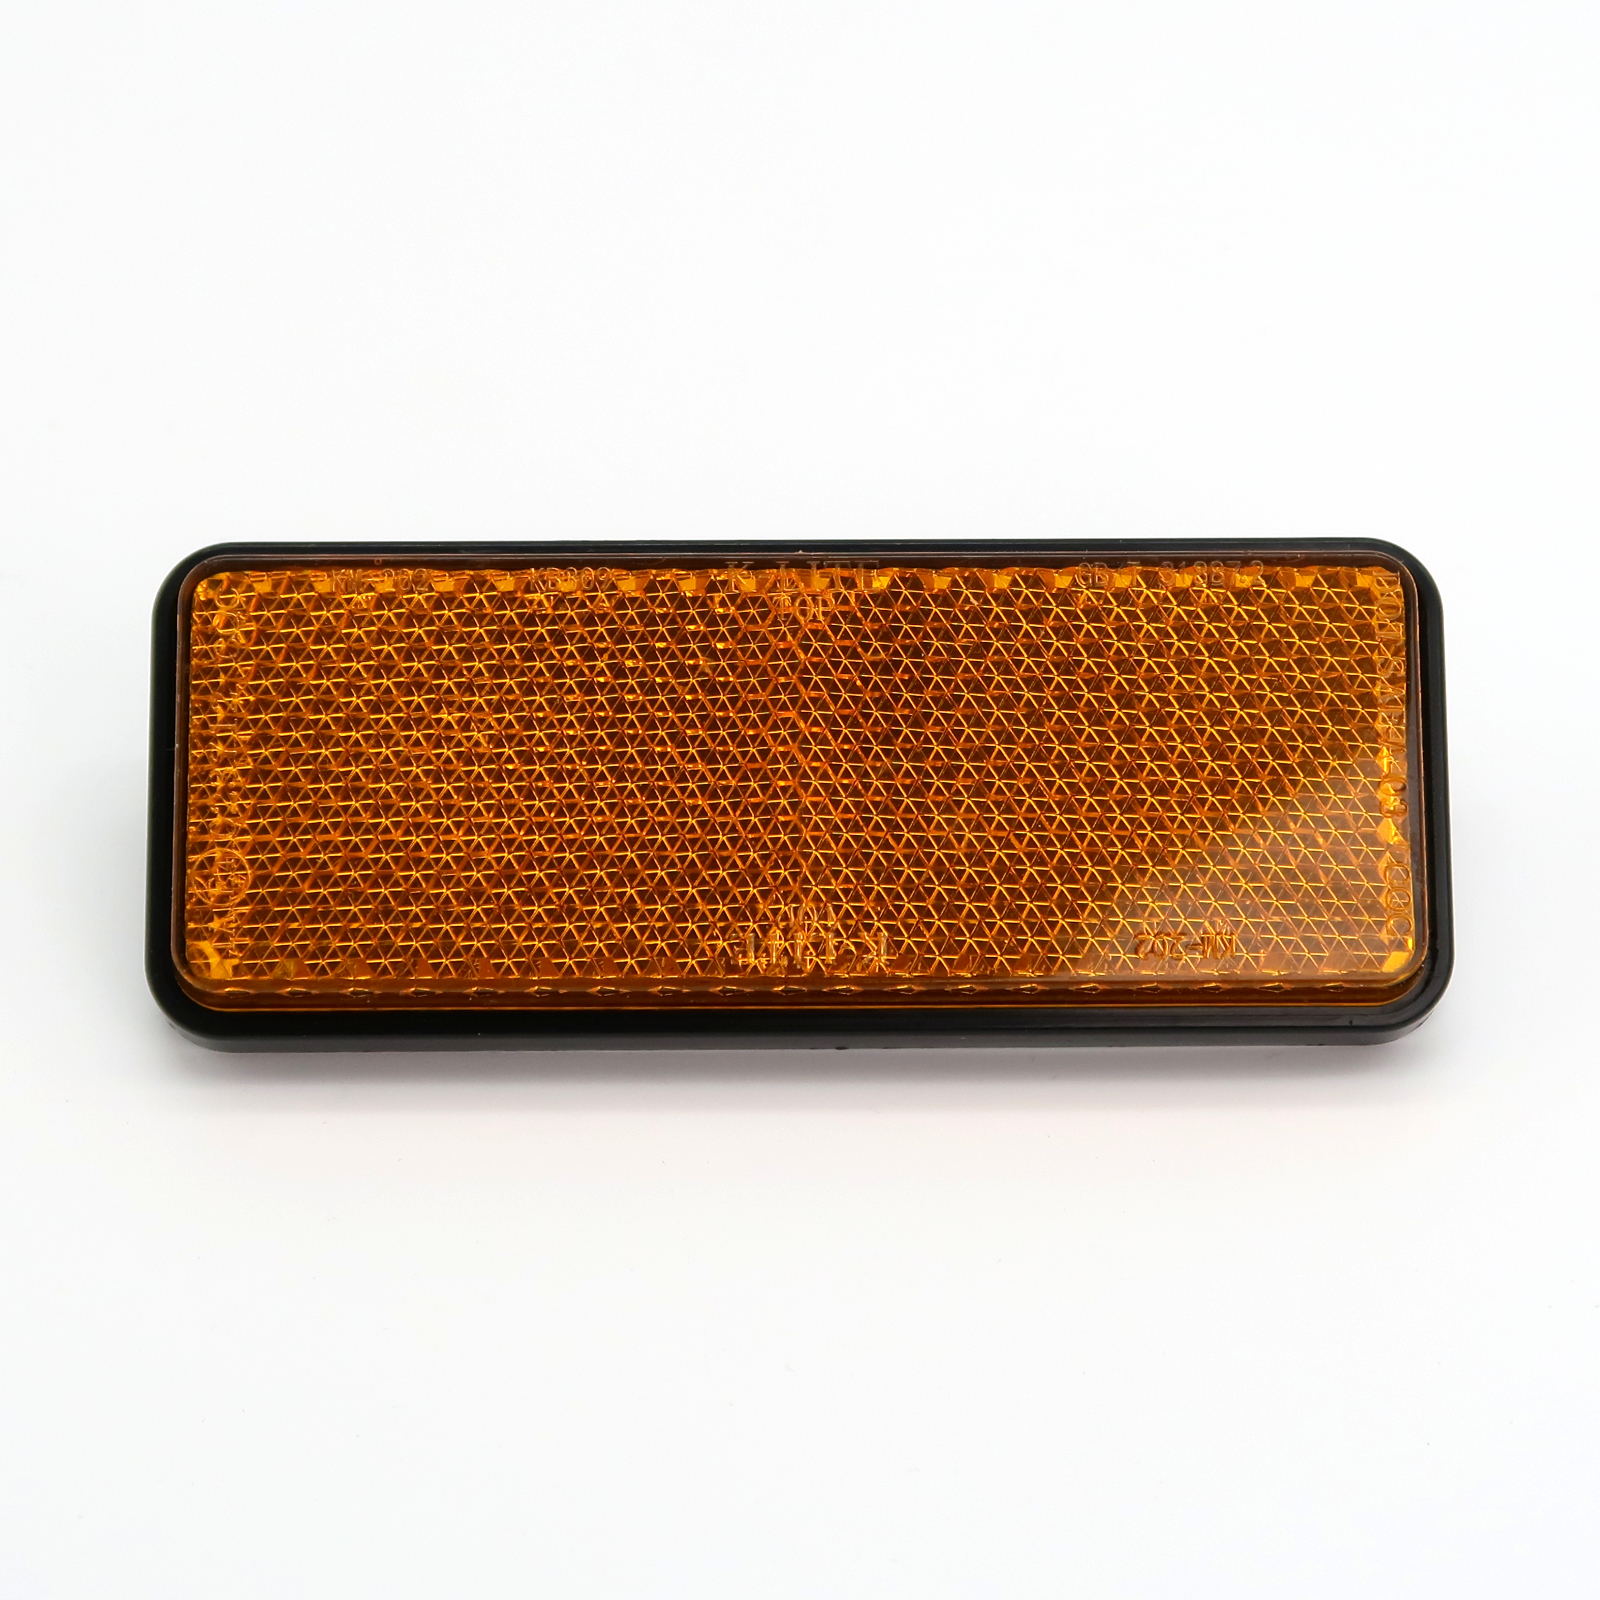 Hero45 - Reflektor, viereckig, Orange, vorne, 1 Stück